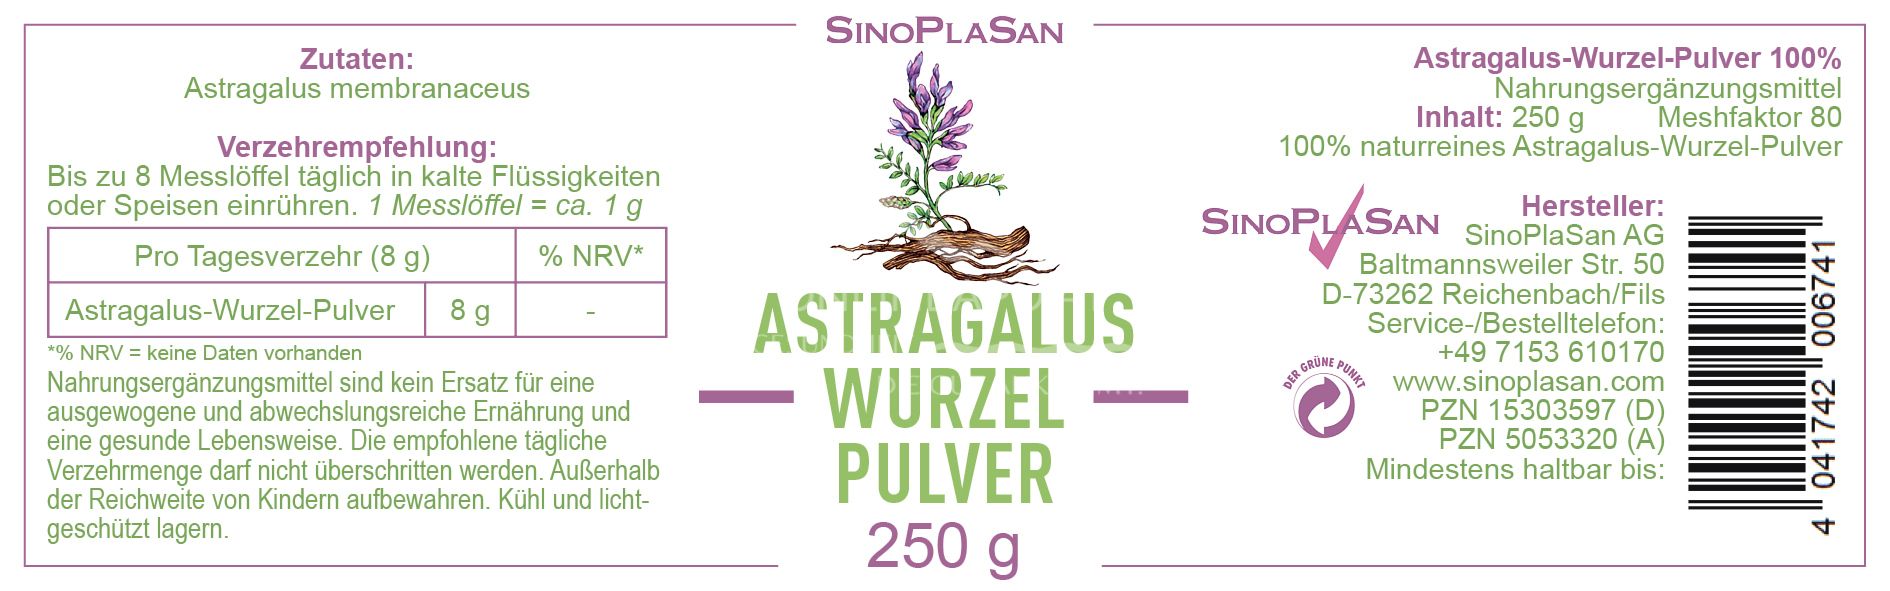 SinoPlaSan Astragalus Wurzel Pulver